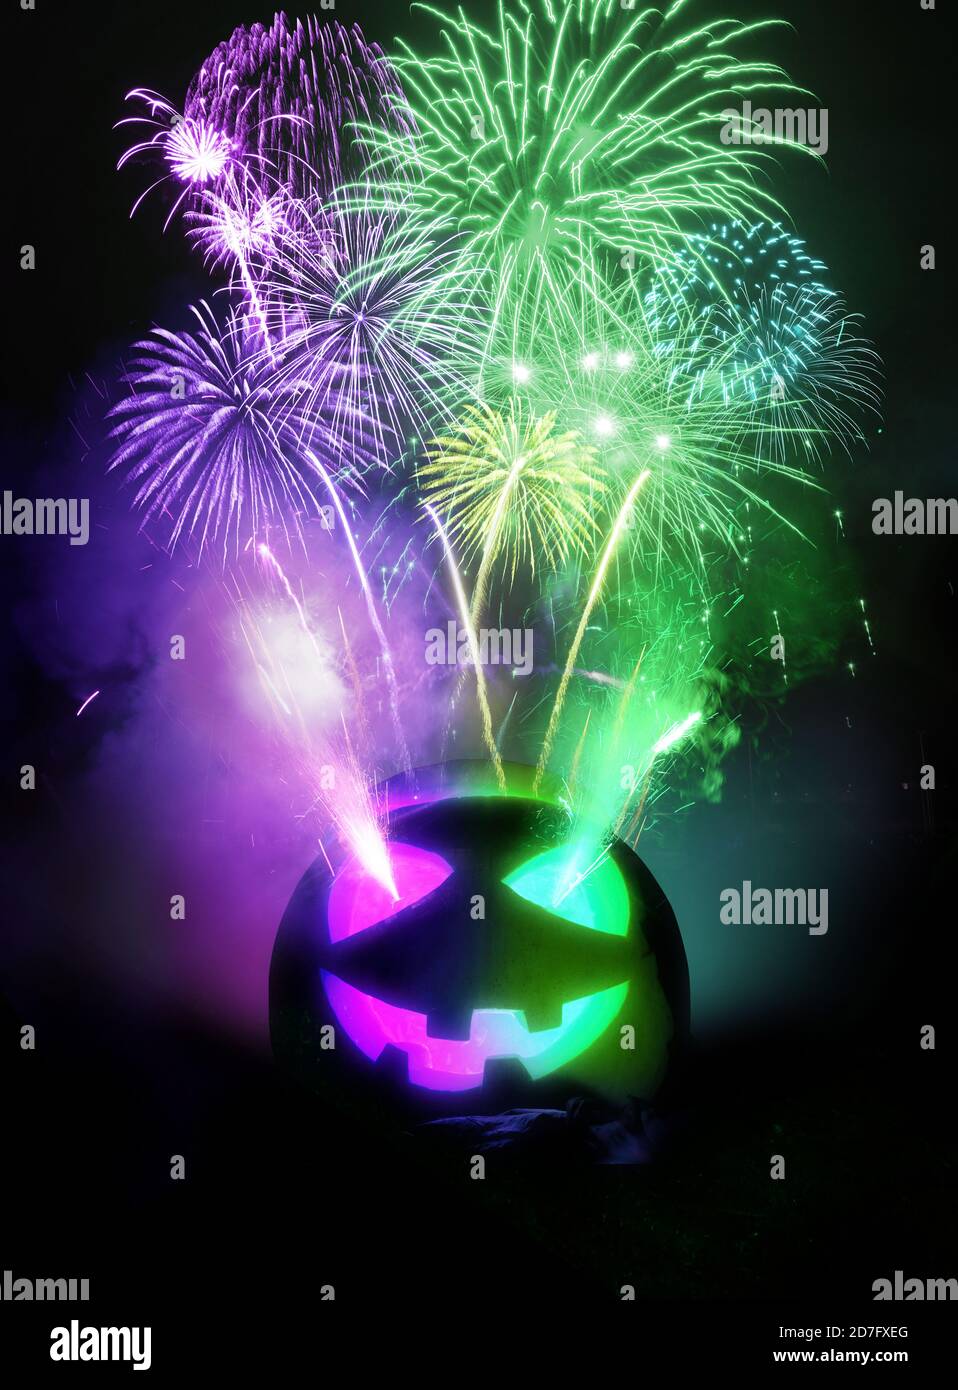 Sfondo della festa di Halloween. Un jack o lanterna scolpito zucca che illumina viola e verde con fuochi d'artificio in fase di rilascio nel cielo notturno. Foto composito Foto Stock